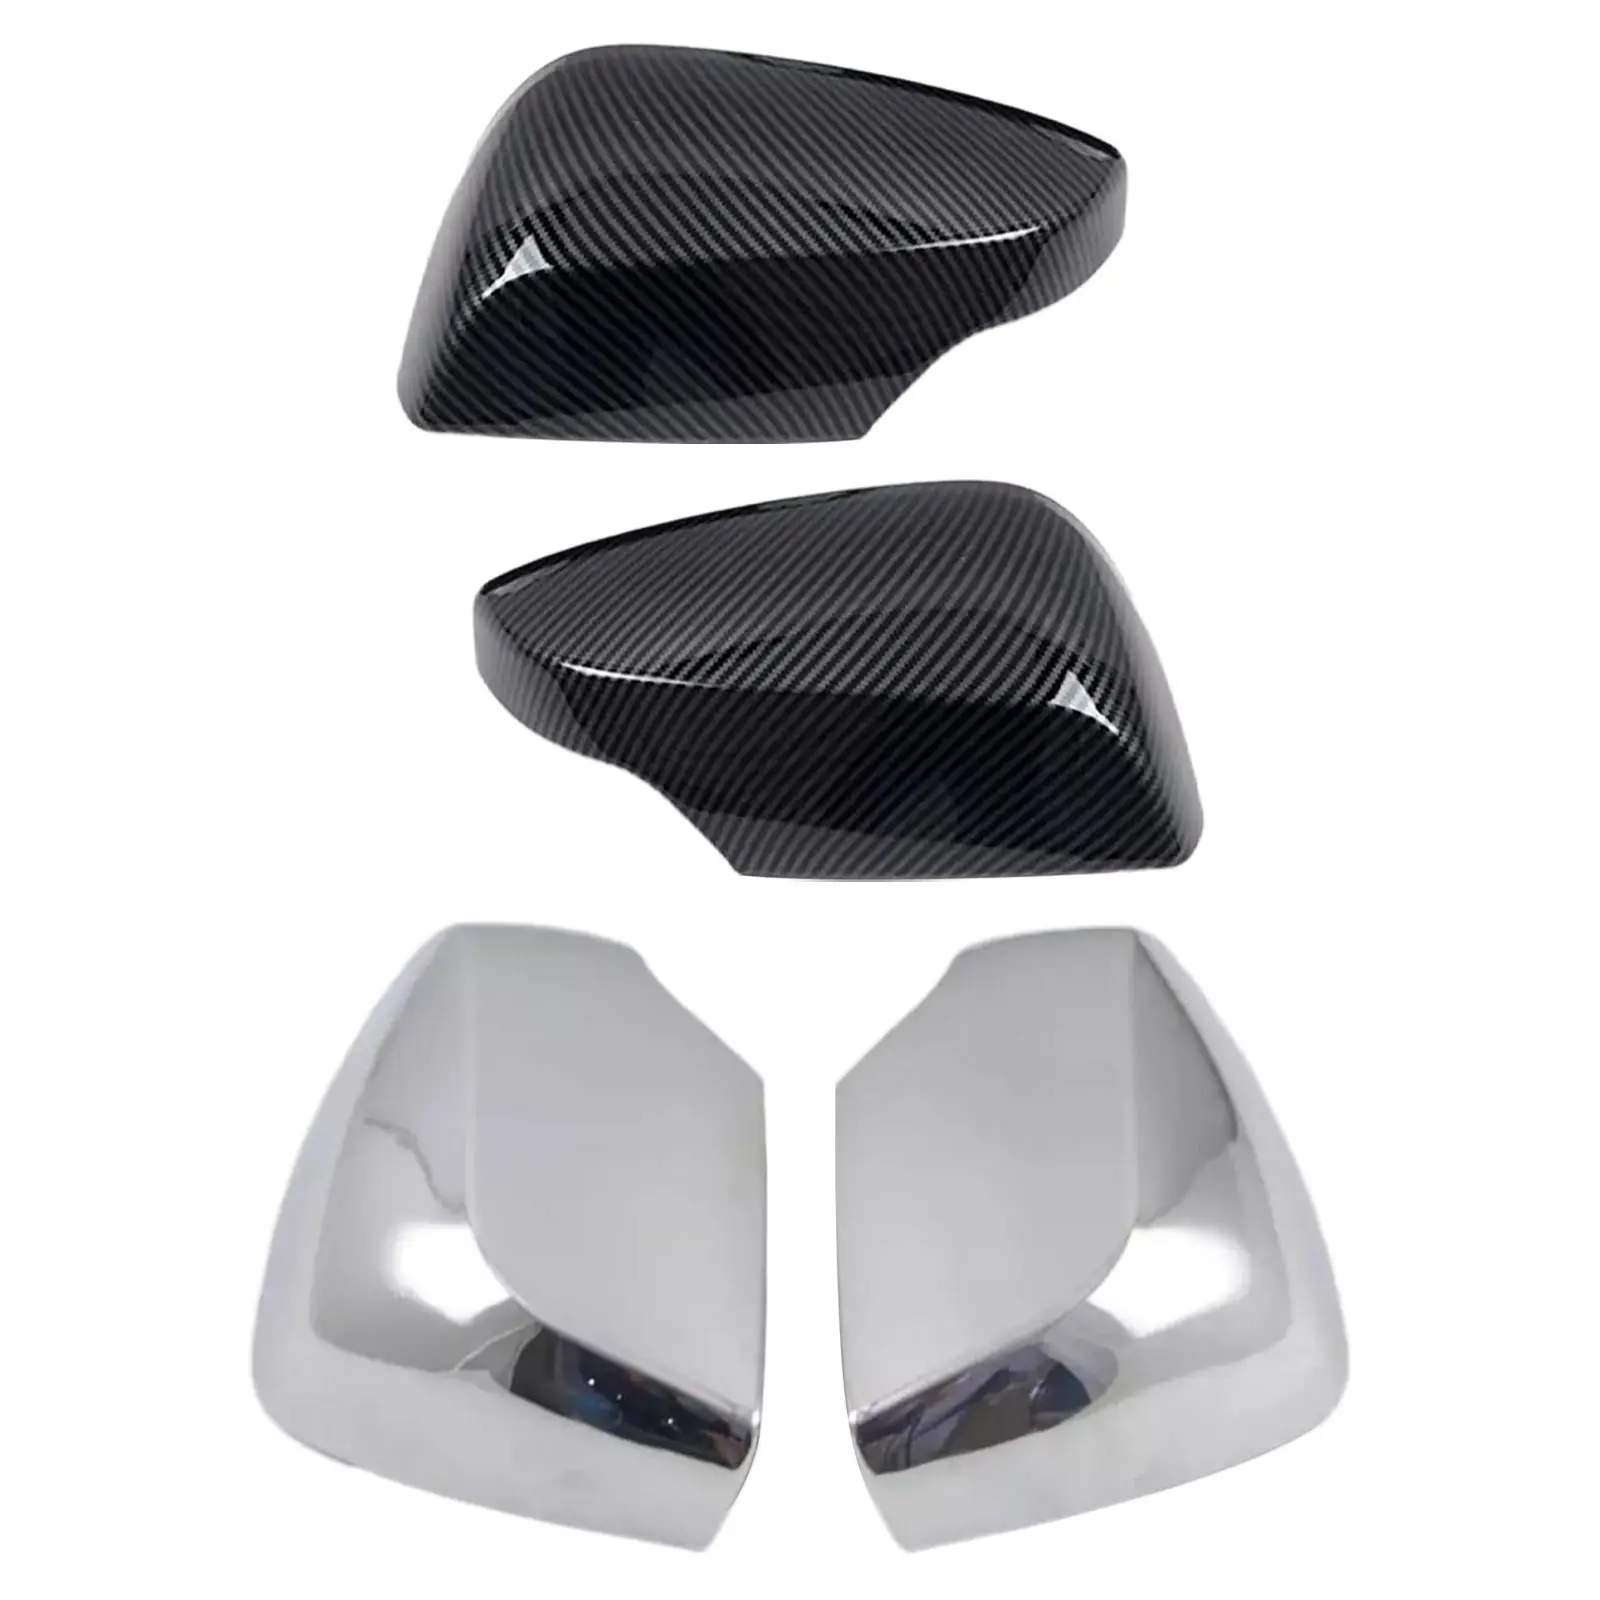 2x Side View Mirror Cover Caps Car Accessories for Subaru WRX Sti